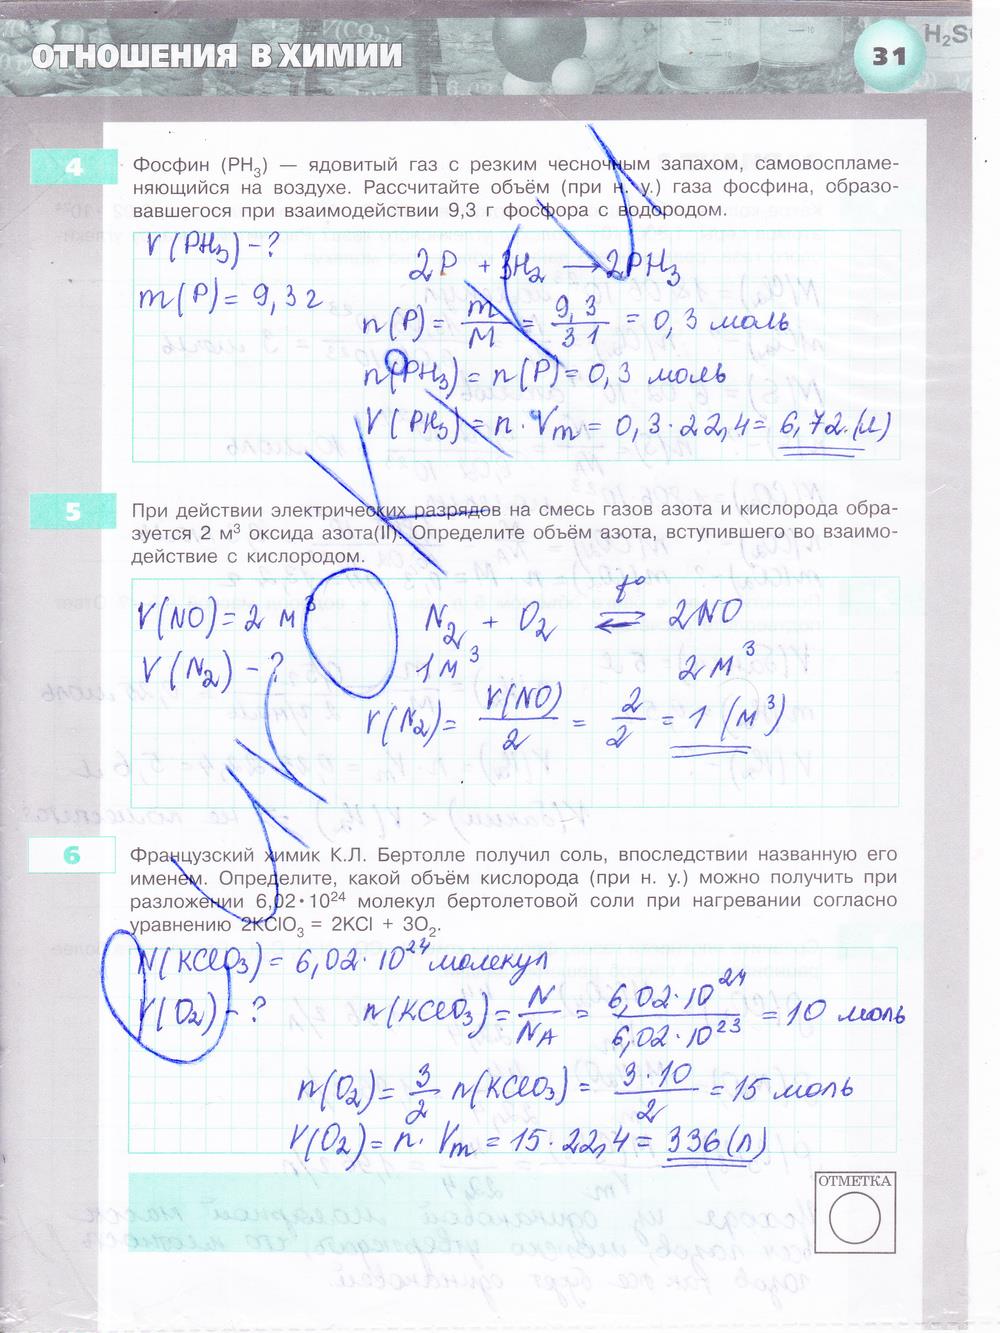 гдз 8 класс тетрадь-экзаменатор страница 31 химия Бобылева, Бирюлина